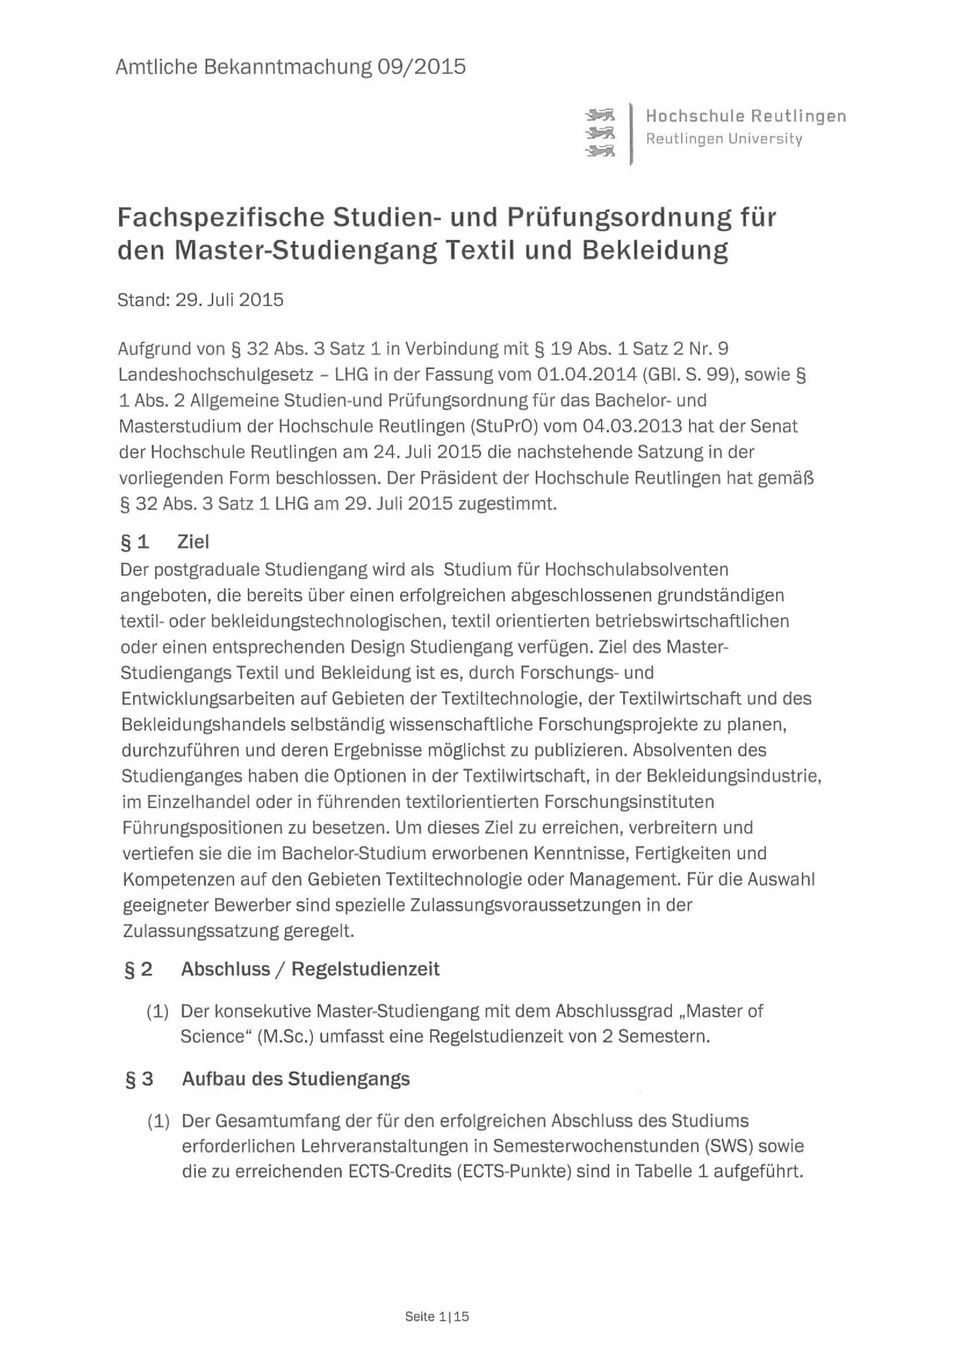 2 Allgemeine Studien-und Prüfungsordnung für das Bachelor- und Masterstudium der Hochschule Reutlingen (StuPrO) vom 04.03.2013 hat der Senat der Hochschule Reutlingen am 24.